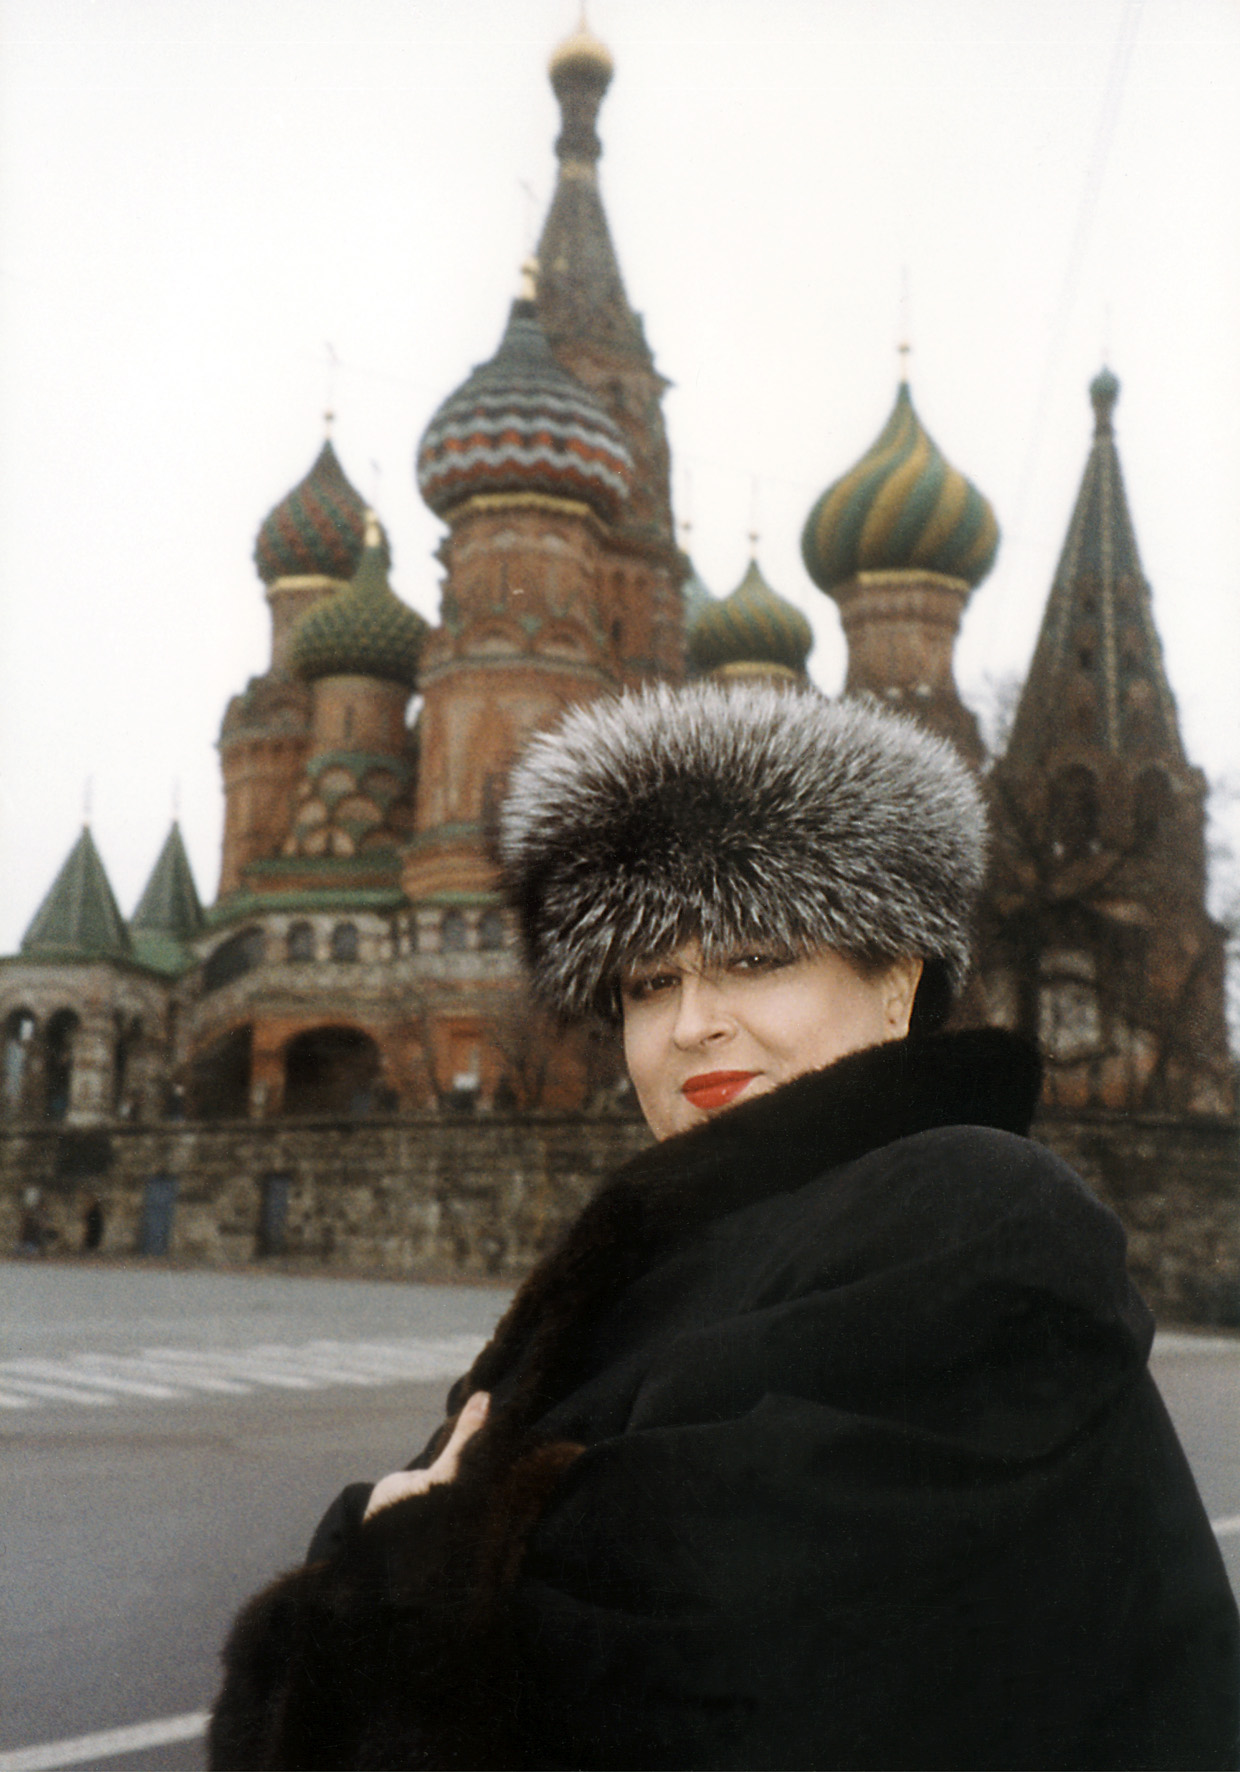 În Piața Roșie din Moscova, în zilele Recitalului Extraordinar Mariana Nicolesco. ”De ani de zile n-am avut parte nici în Marea Sală a Conservatorului, nici la Bolshoi Teatr de o artă desăvârșită ca a marii soprane”. (Nezavisimaya Gazeta)